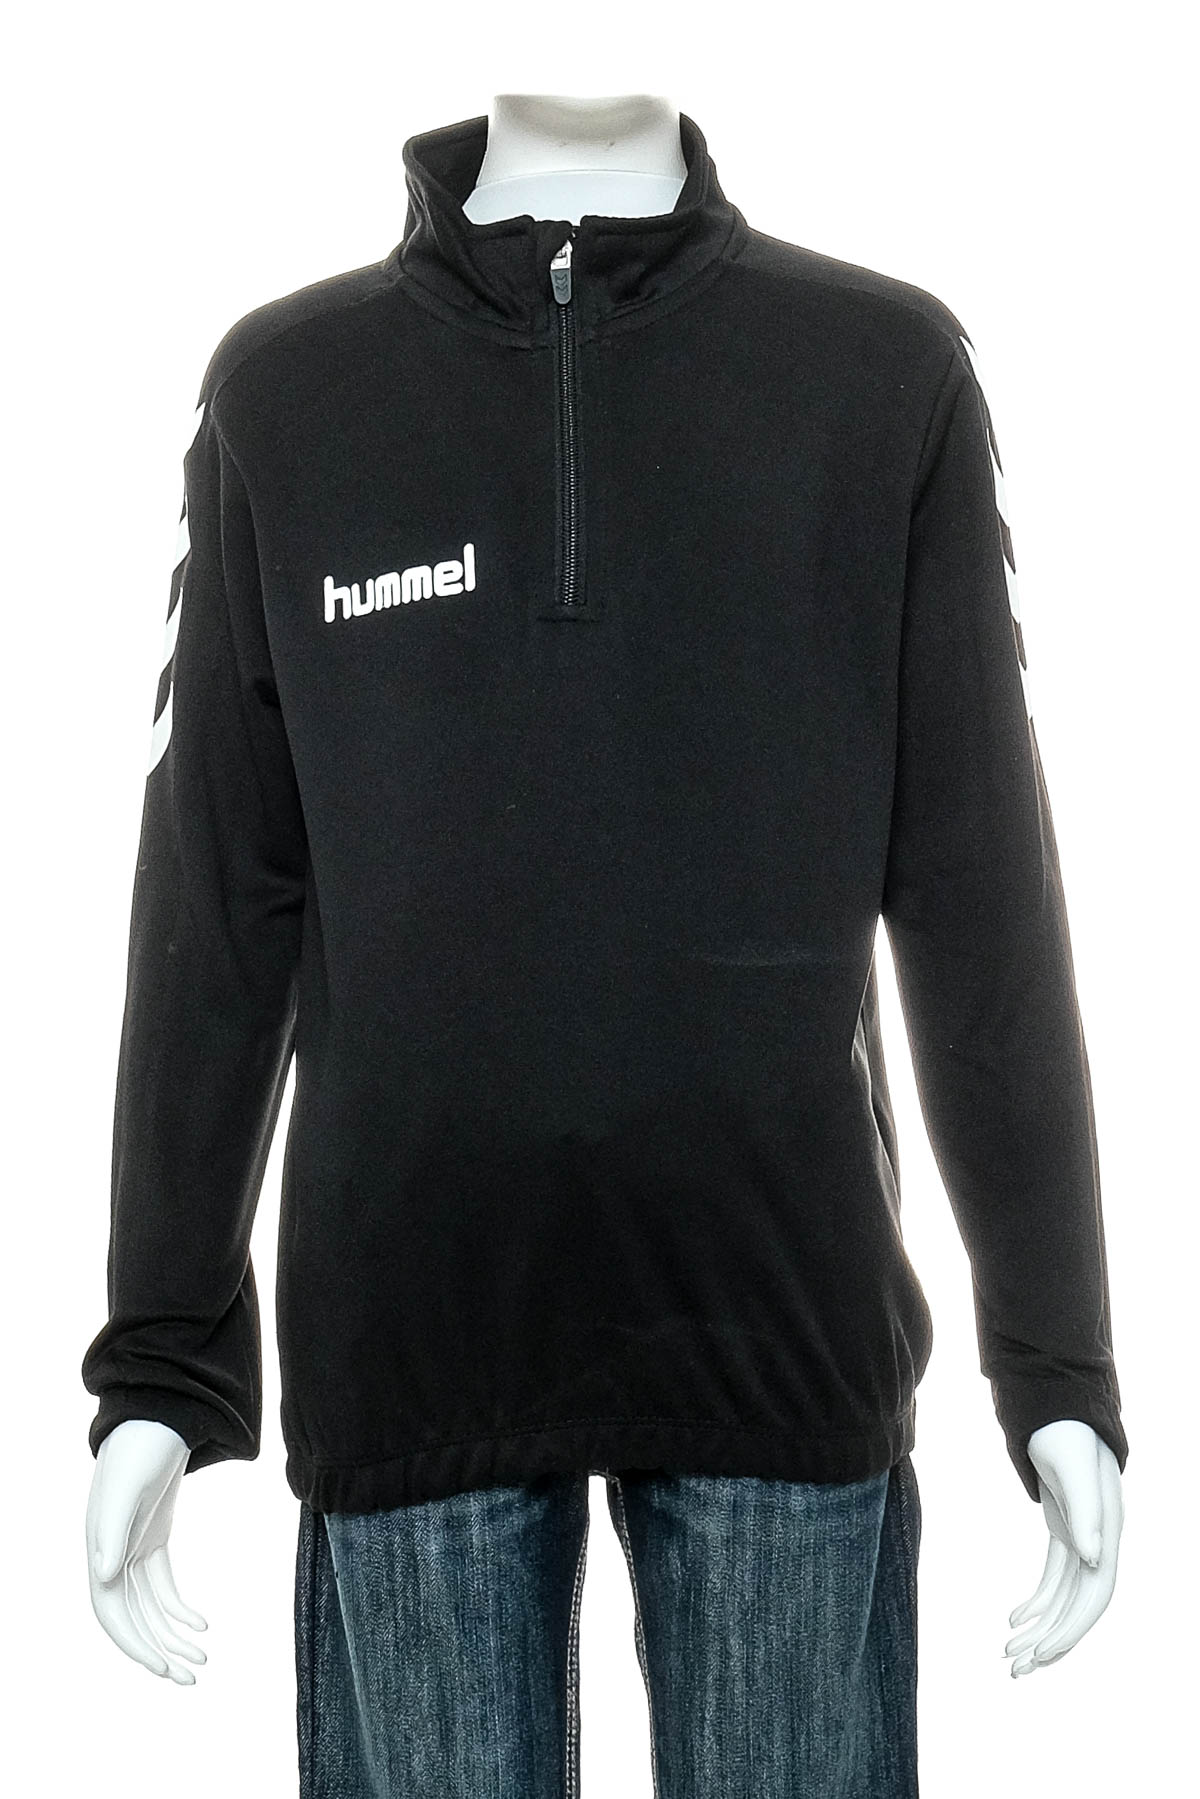 Μπλούζα για αγόρι - Hummel - 0